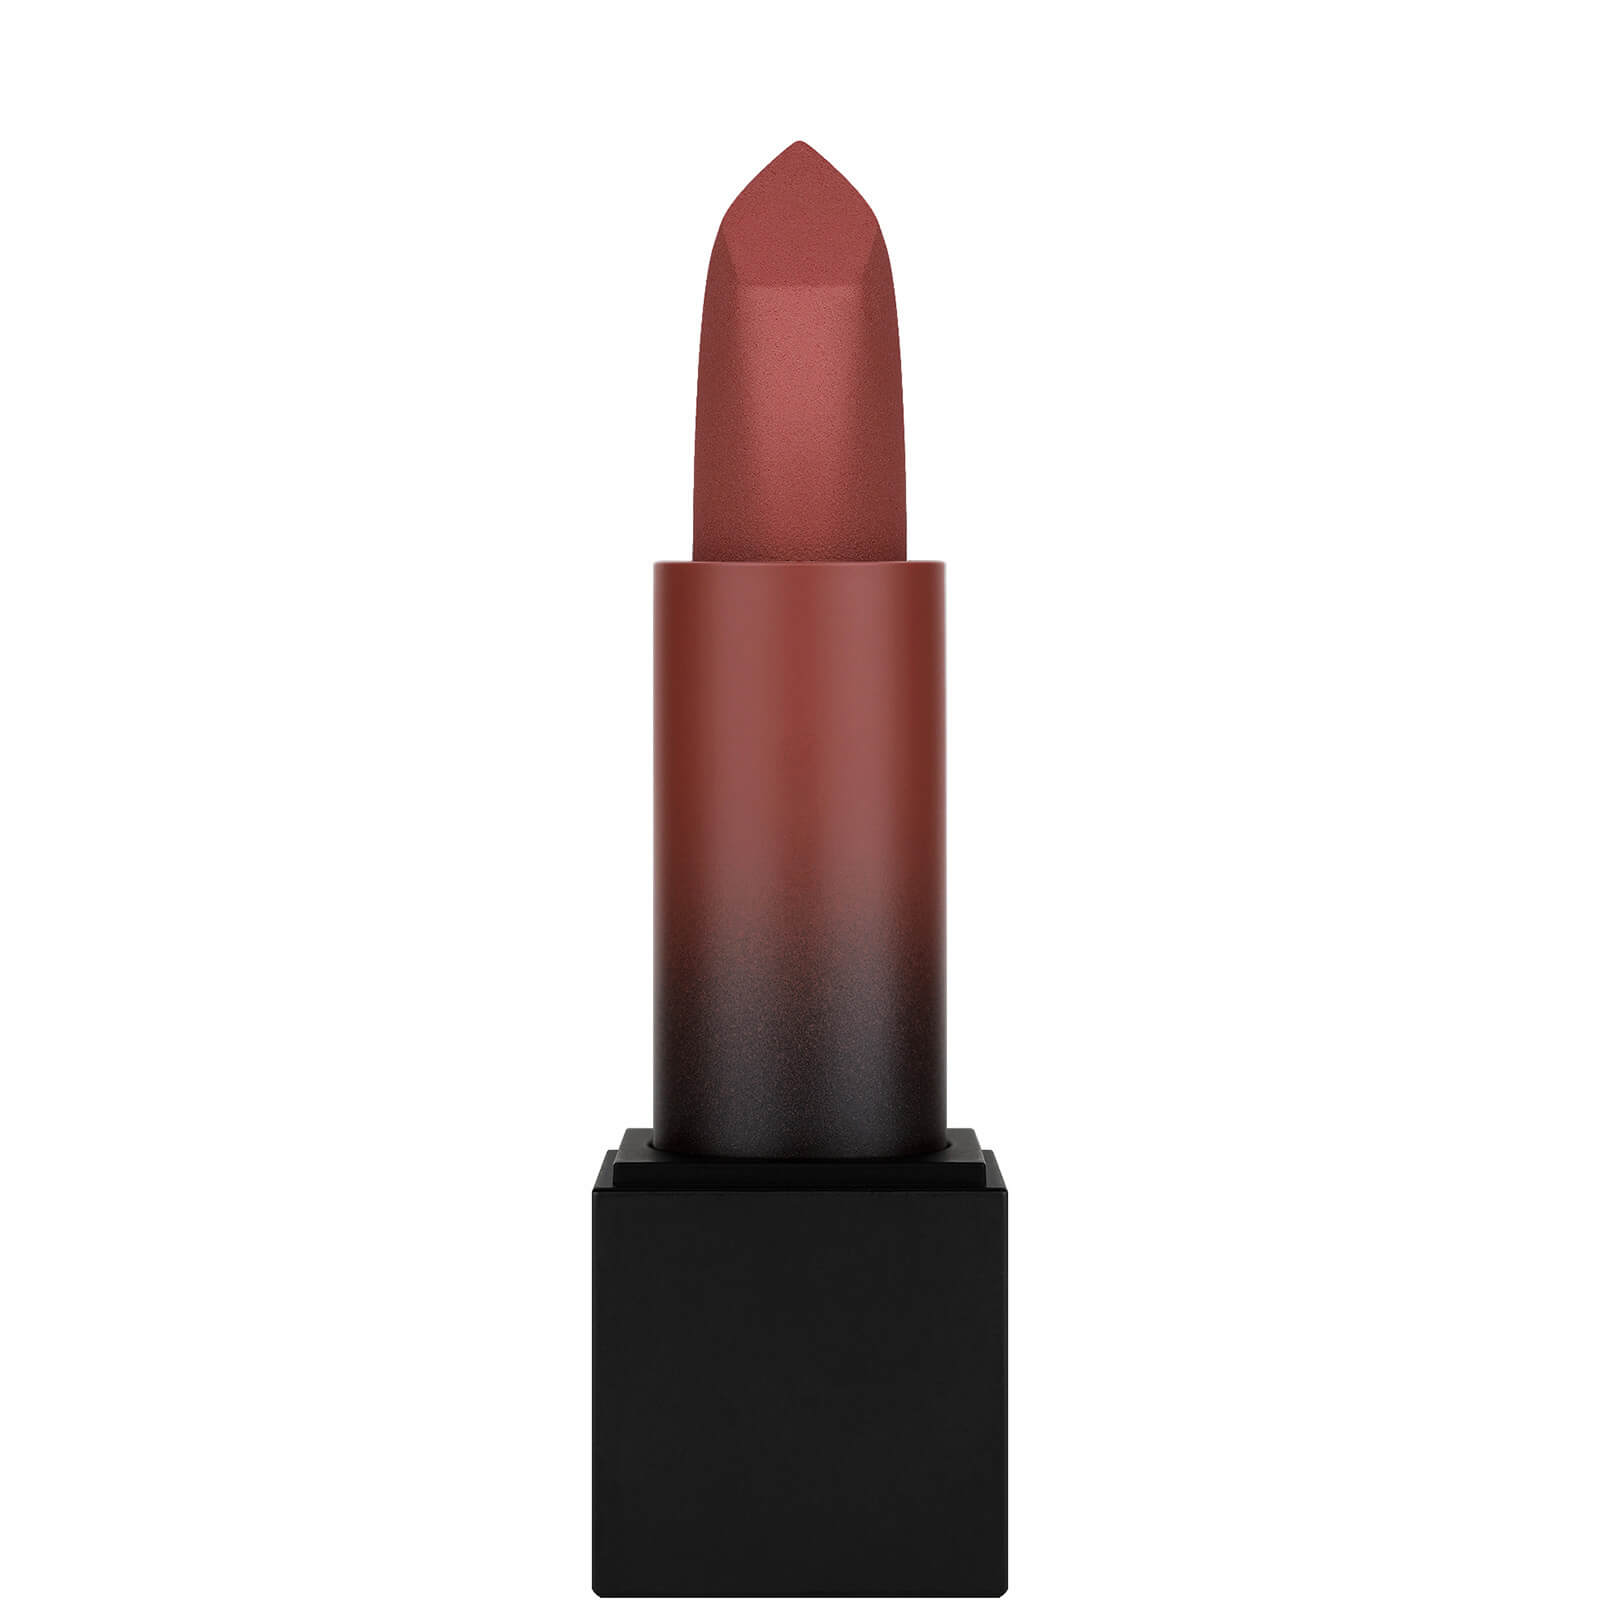 Photos - Lipstick & Lip Gloss Huda Beauty Power Bullet Matte Lipstick - Third Date 